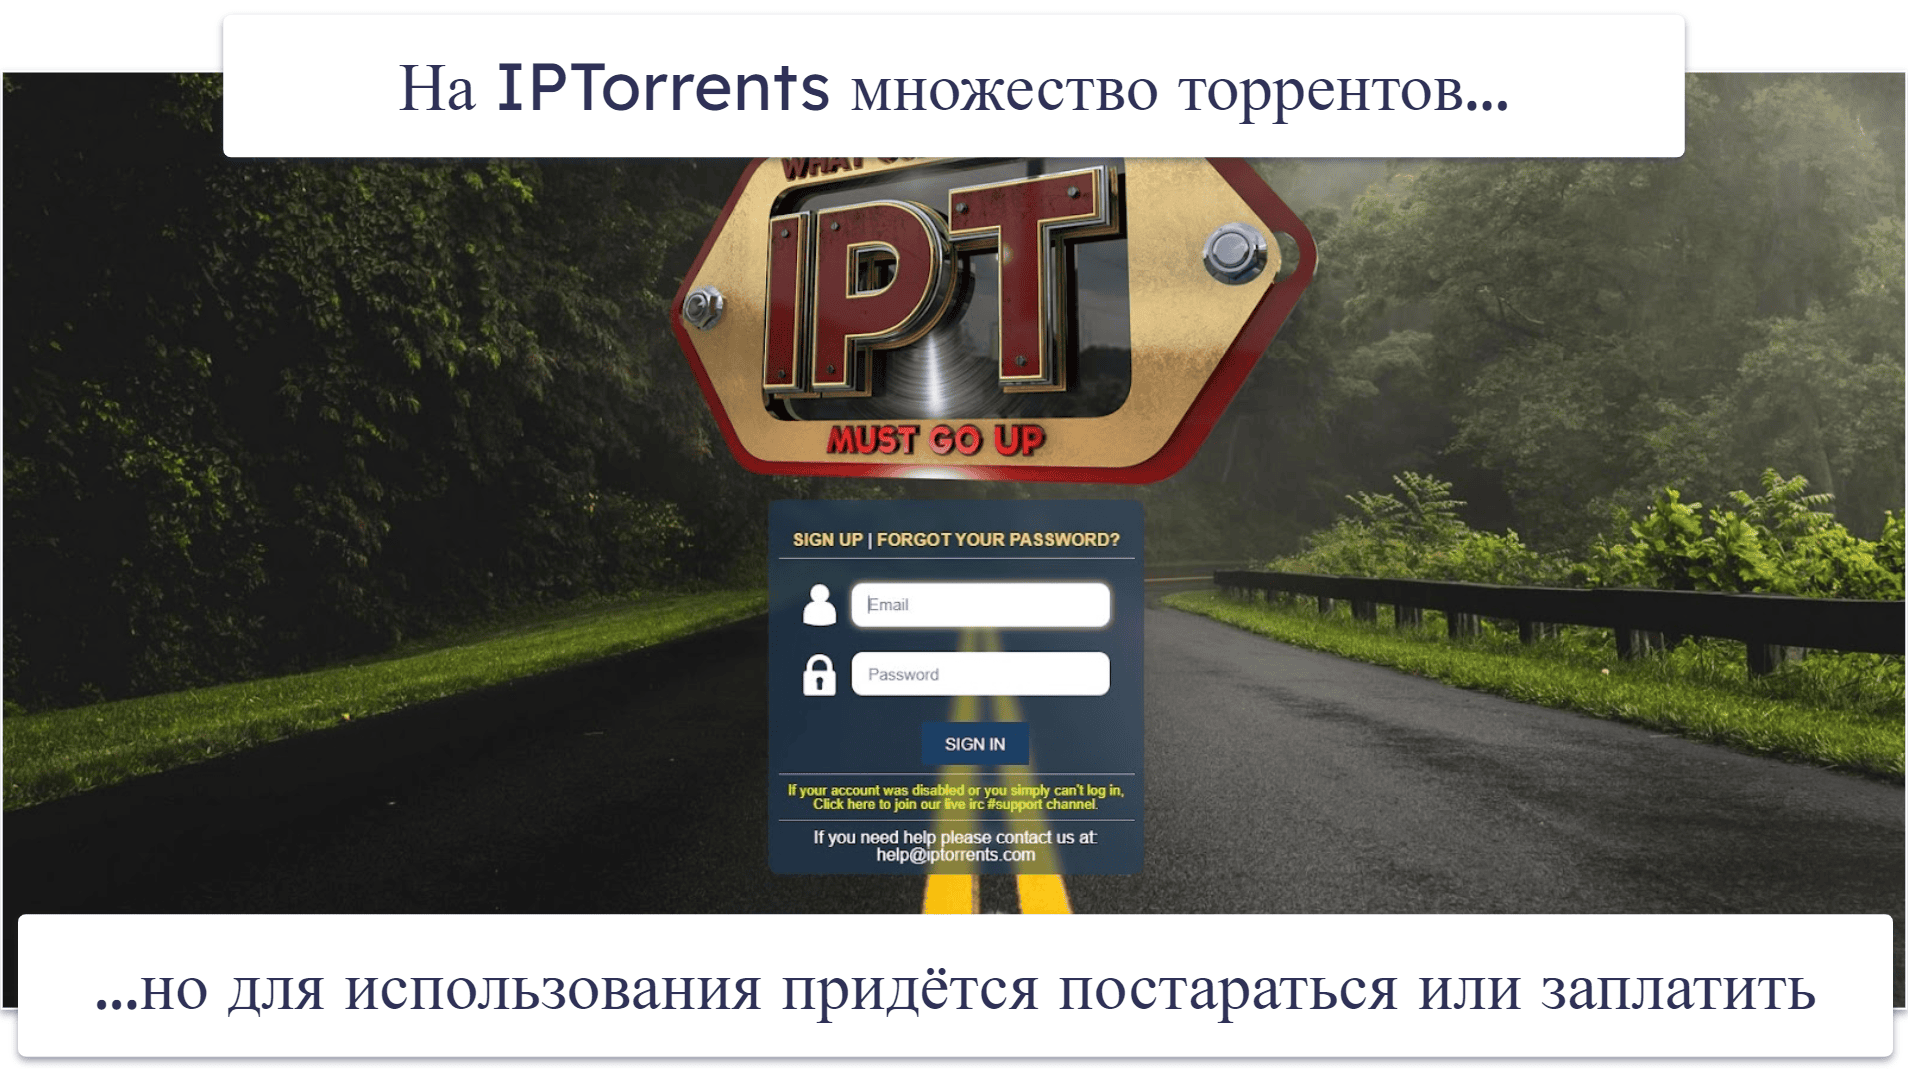 9. IPTorrents